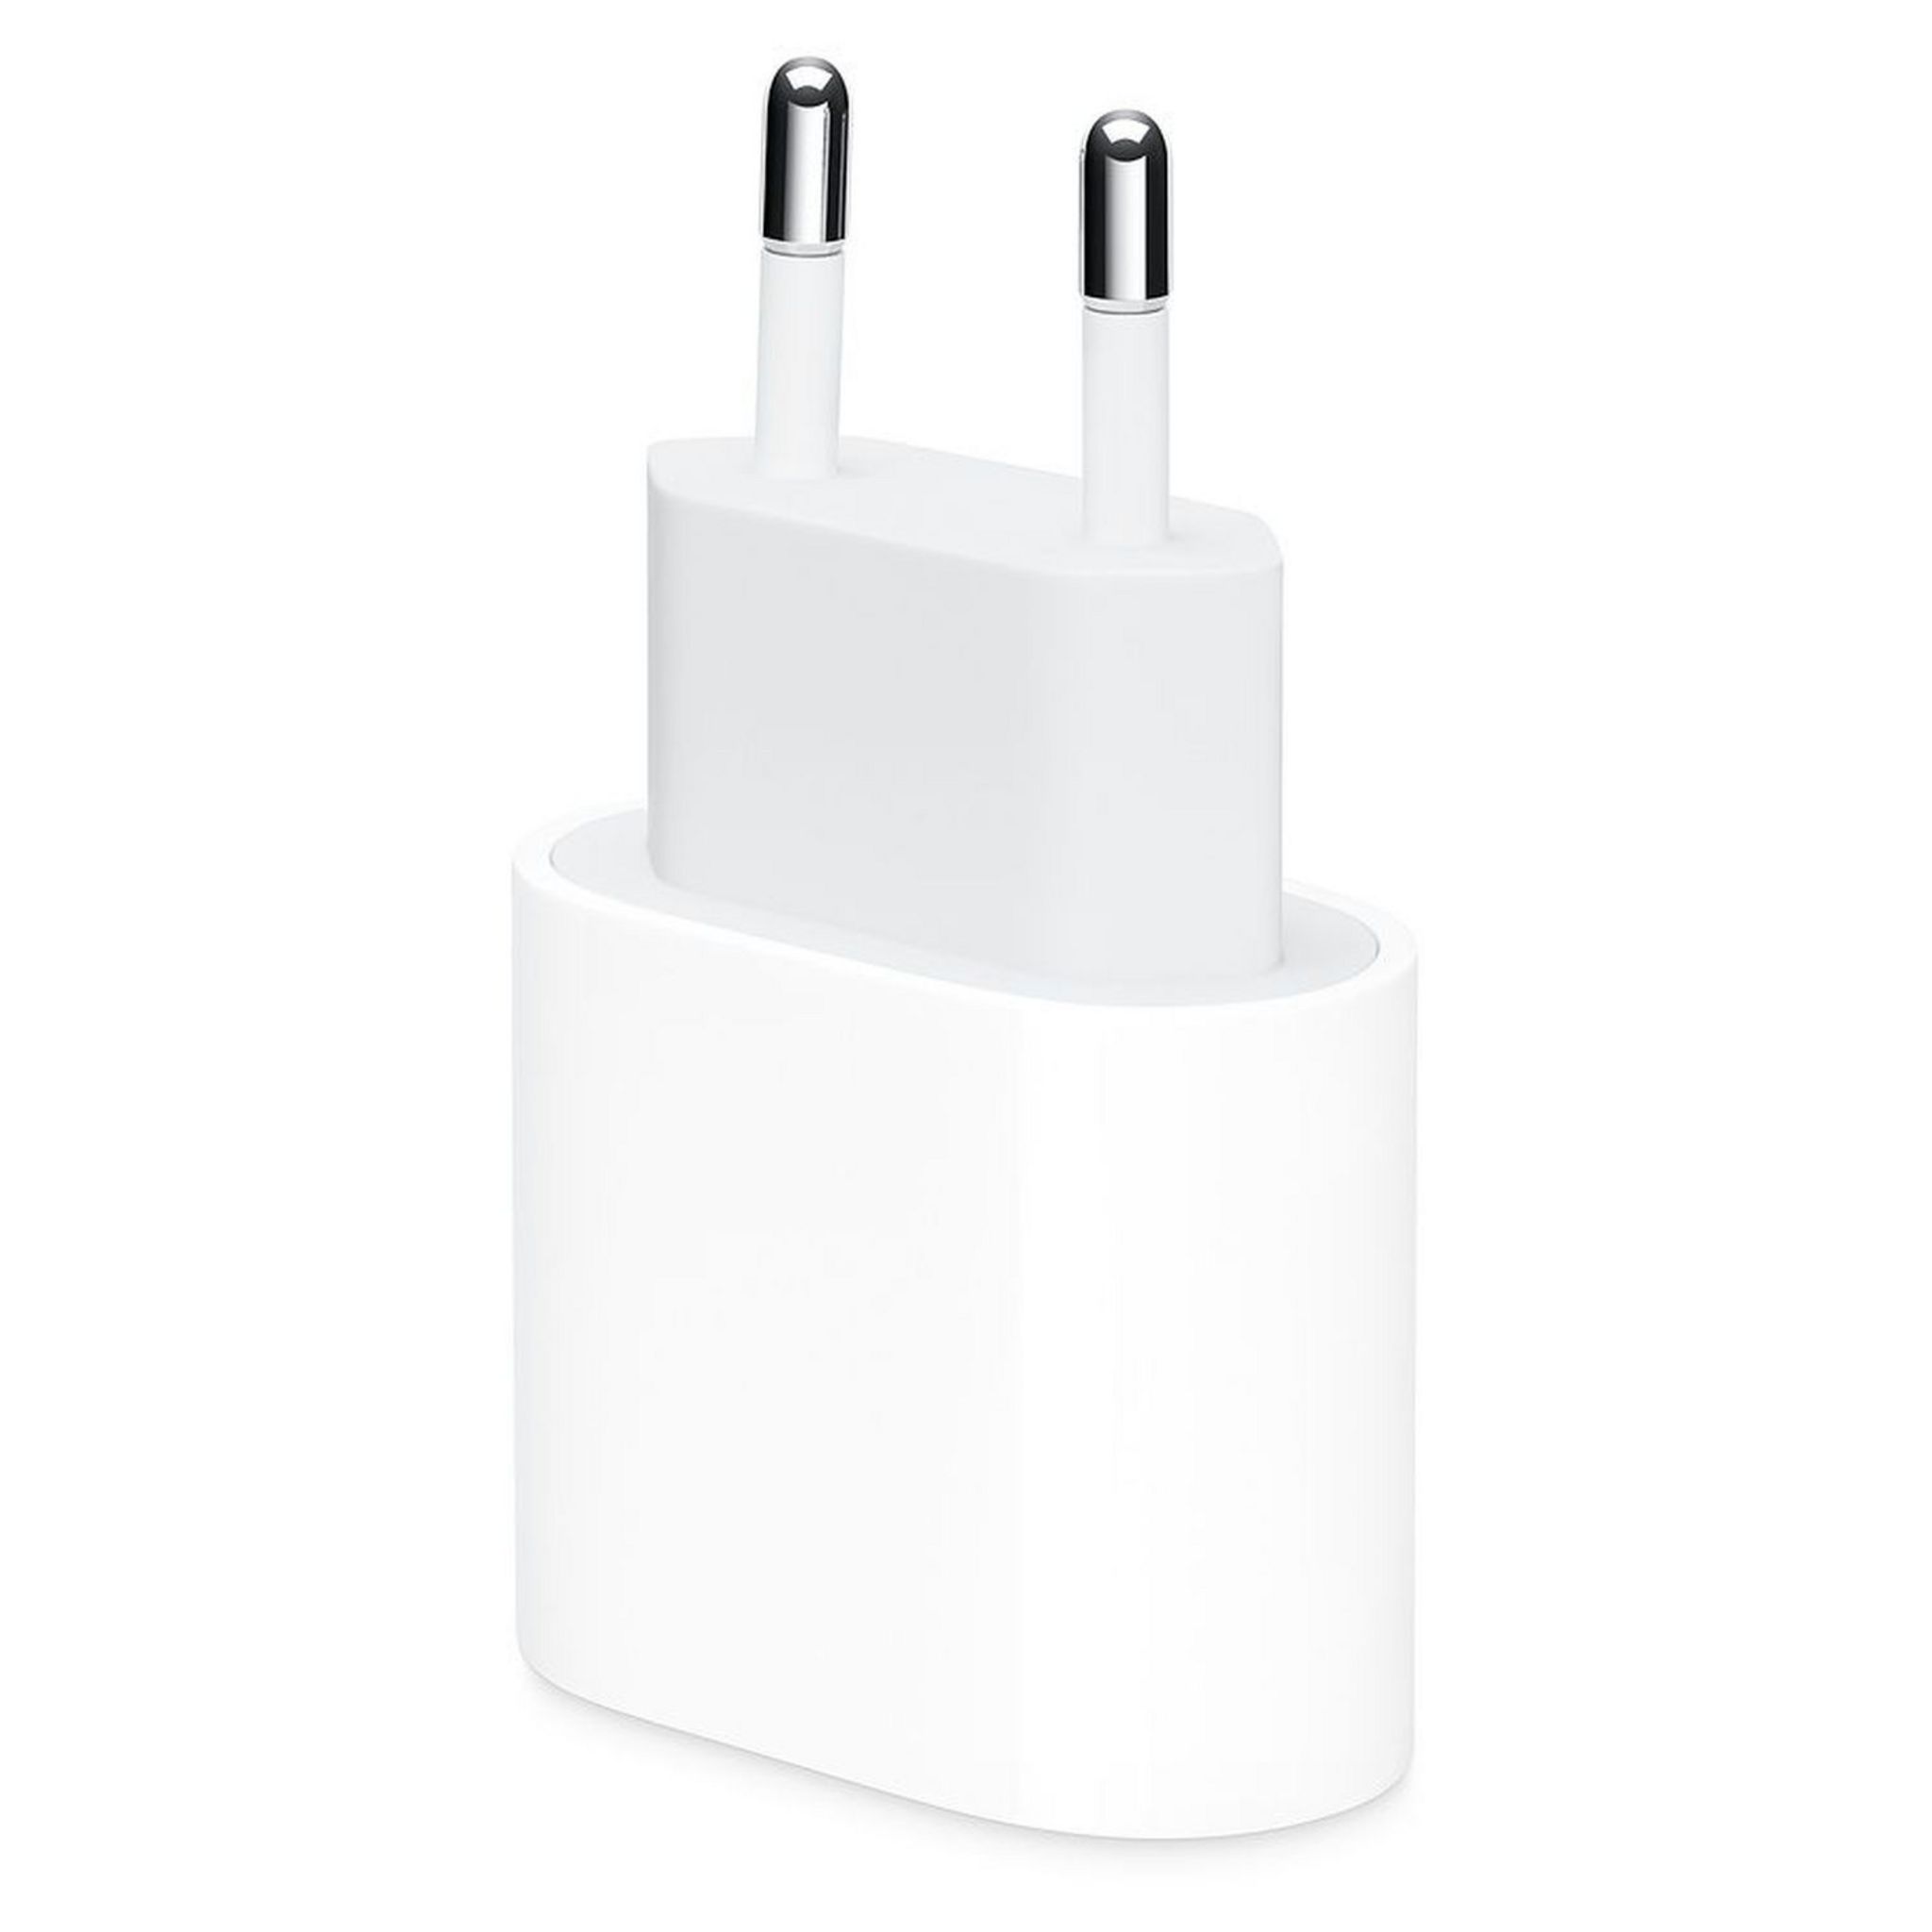 APPLE Chargeur secteur /USB-C pour iPhone, iPad, iPod - Blanc pas